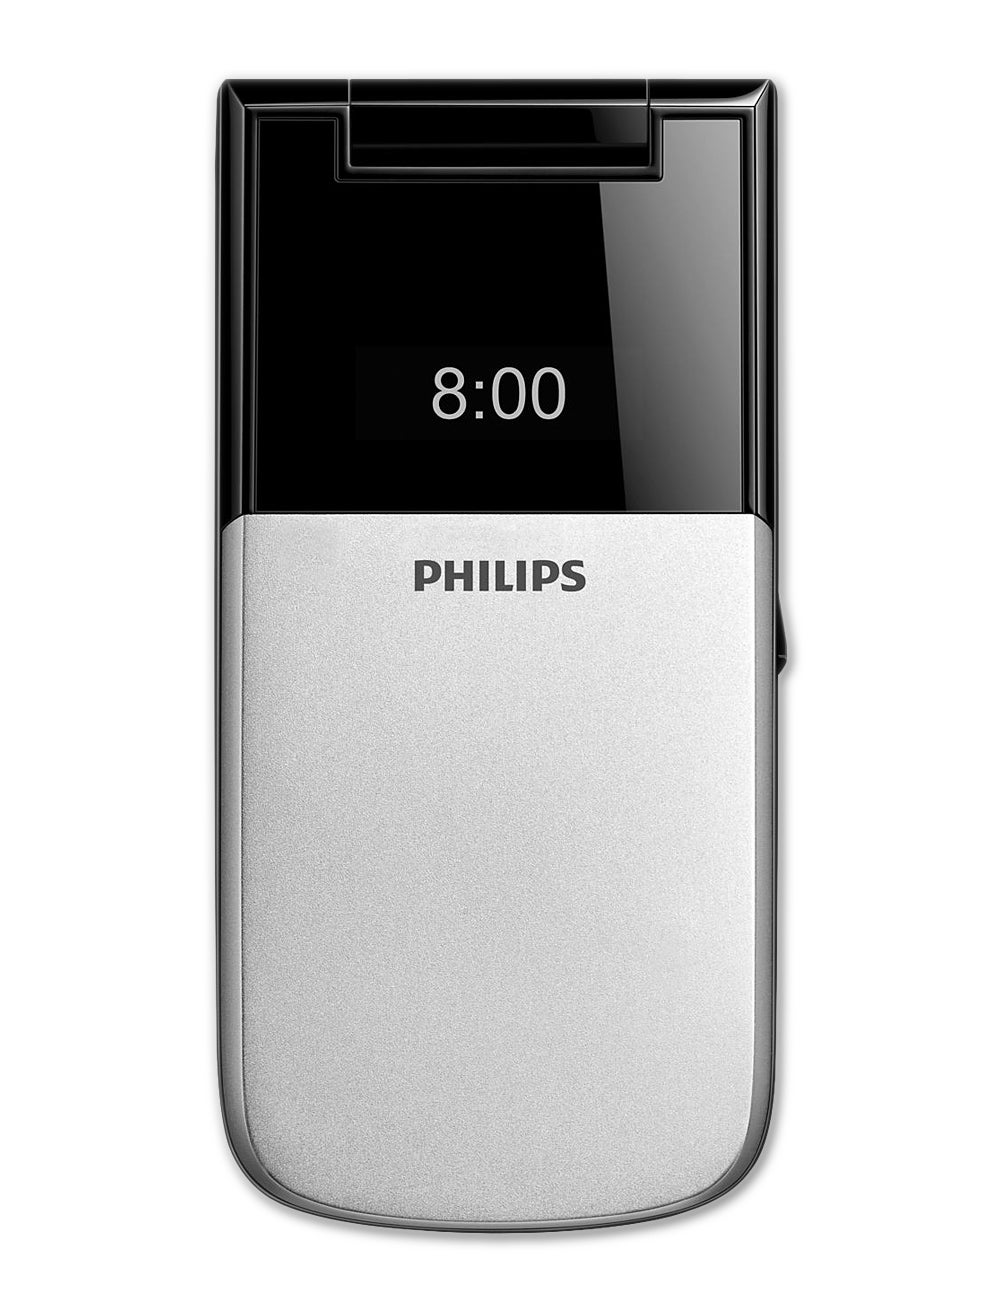 Телефон philips раскладушка. Philips x526. Philips Xenium x526. Смартфон раскладушка Philips Xenium x526. Теф Филипс раскладушка 2023.